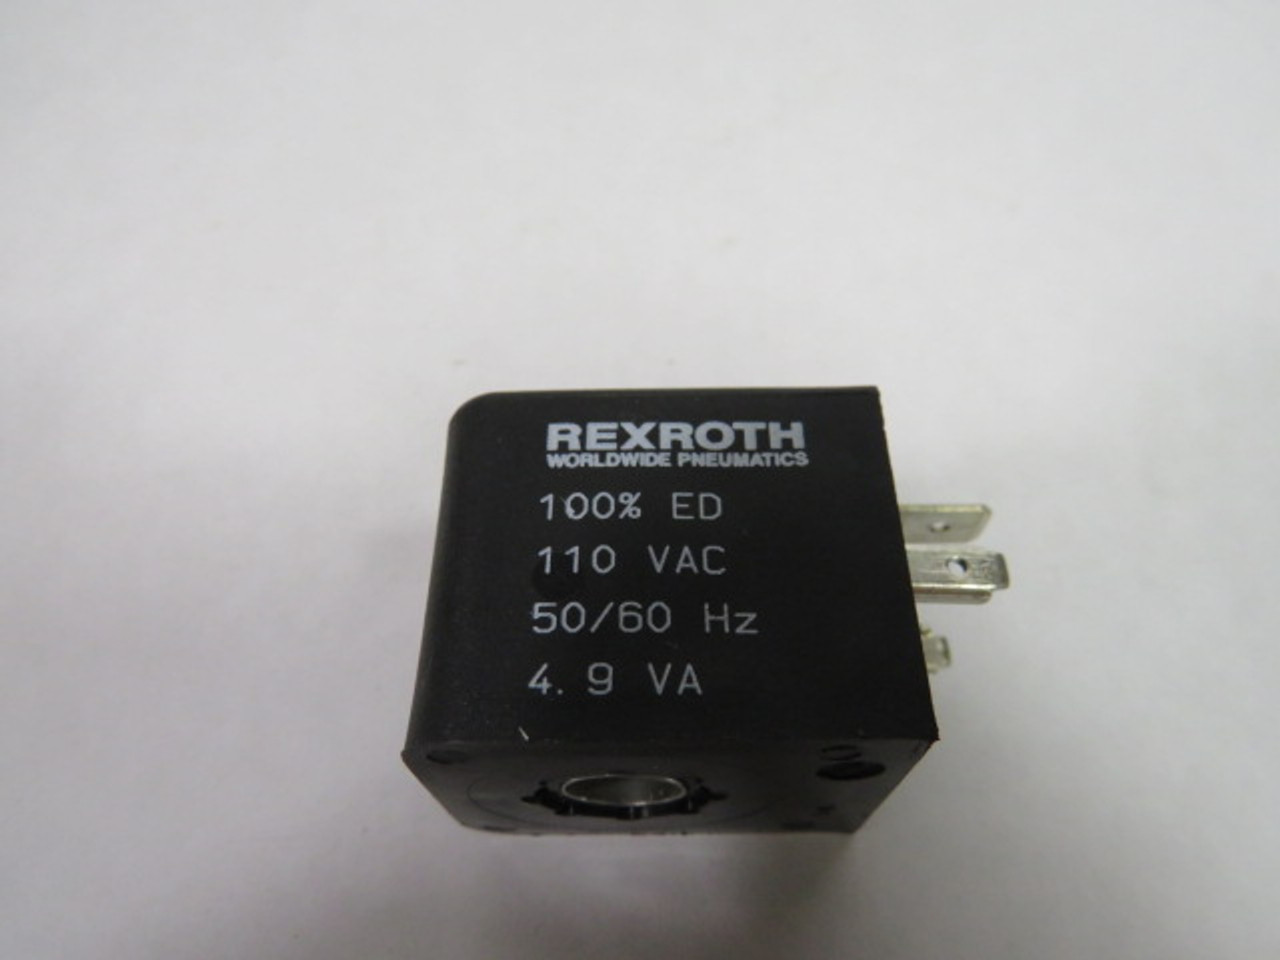 Rexroth 8-30 Solenoid Coil 110VAC 50/60Hz. 4.9VA 100% ED USED